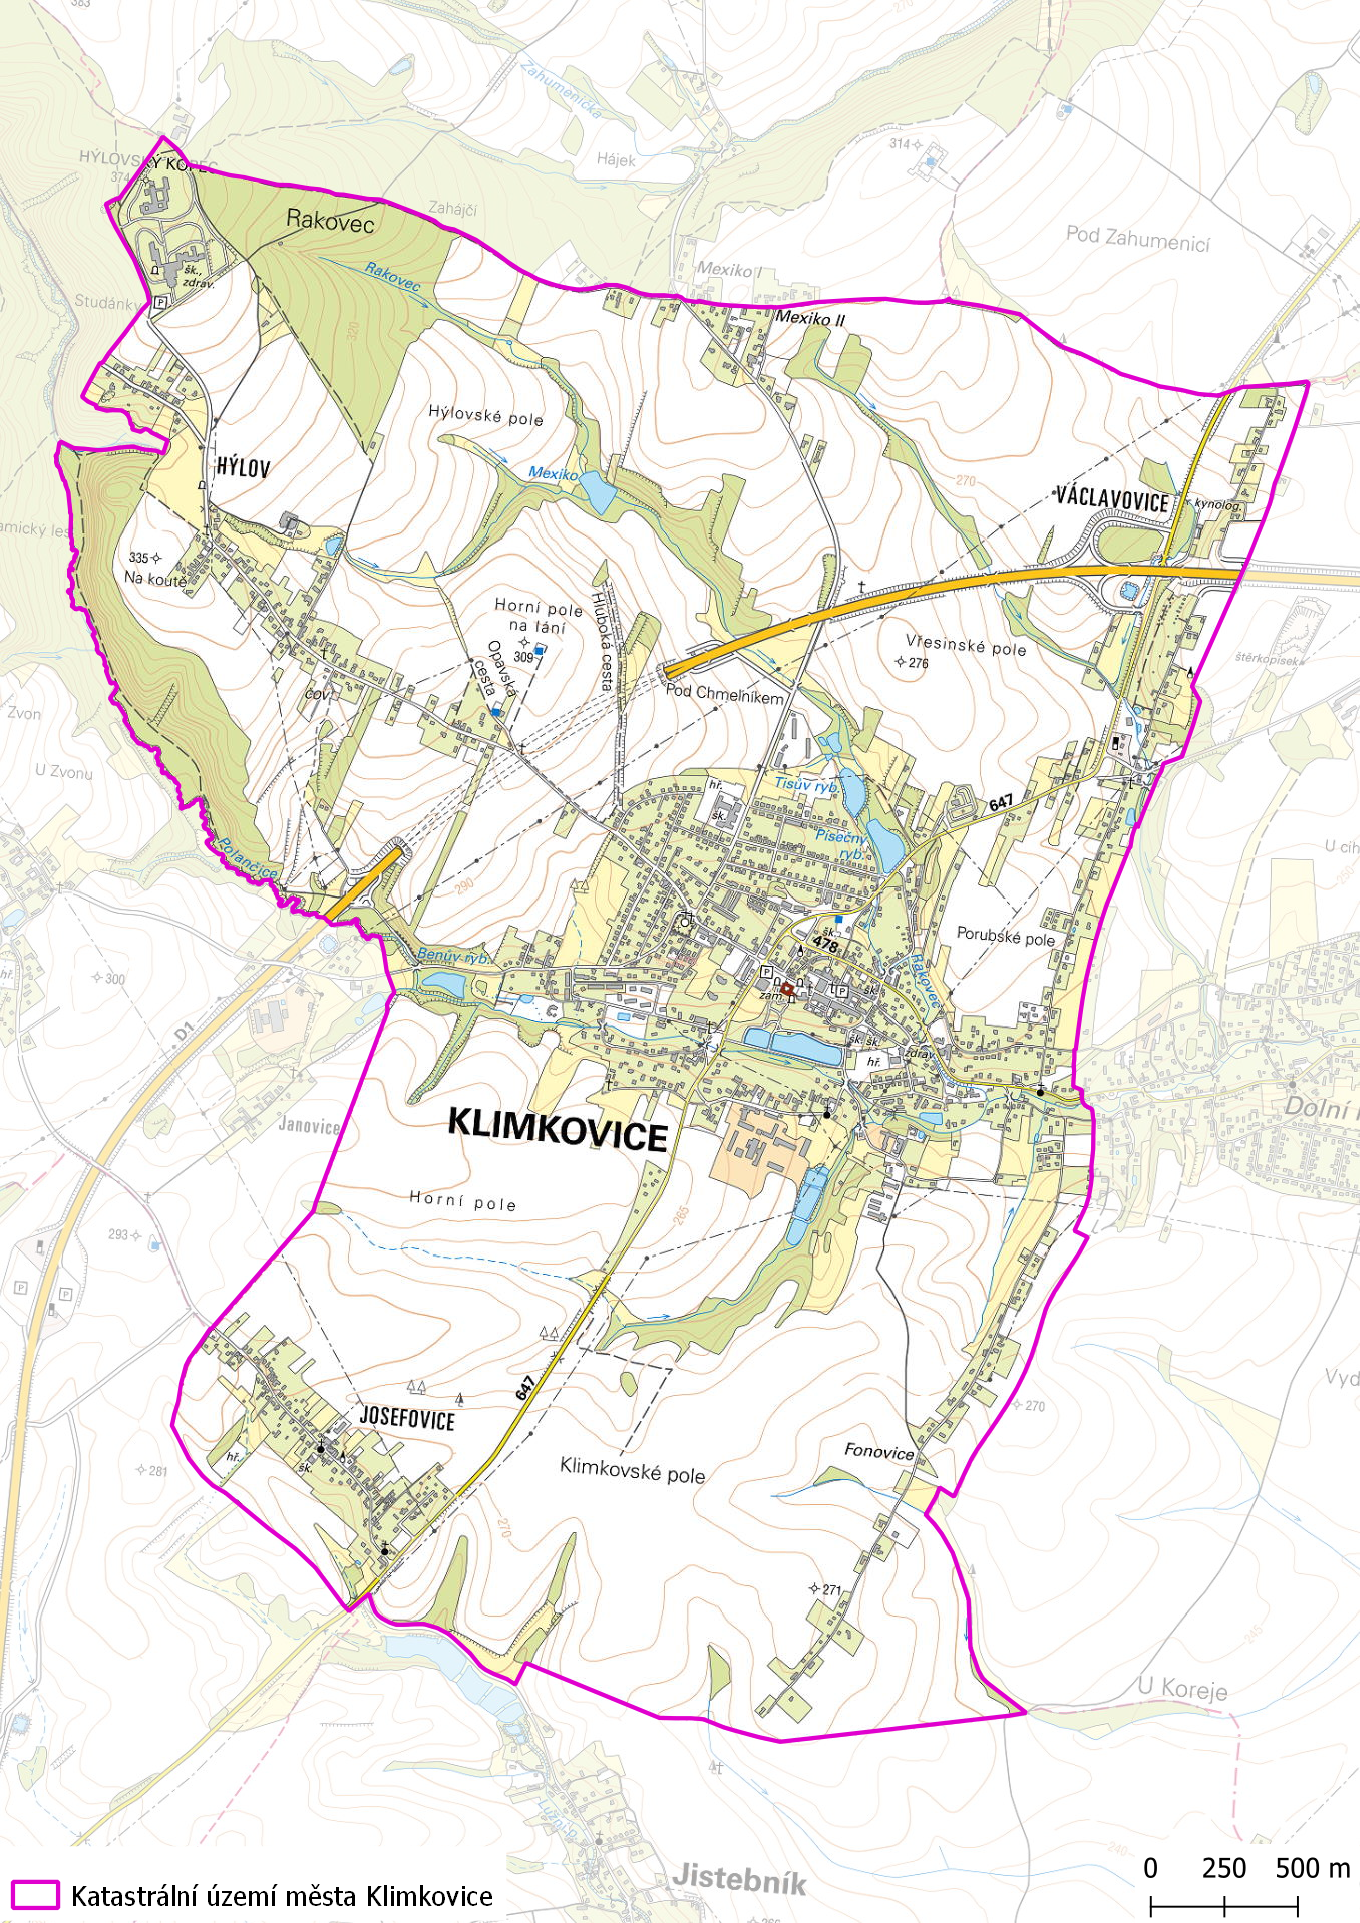 Katastrální území města Klimkovice